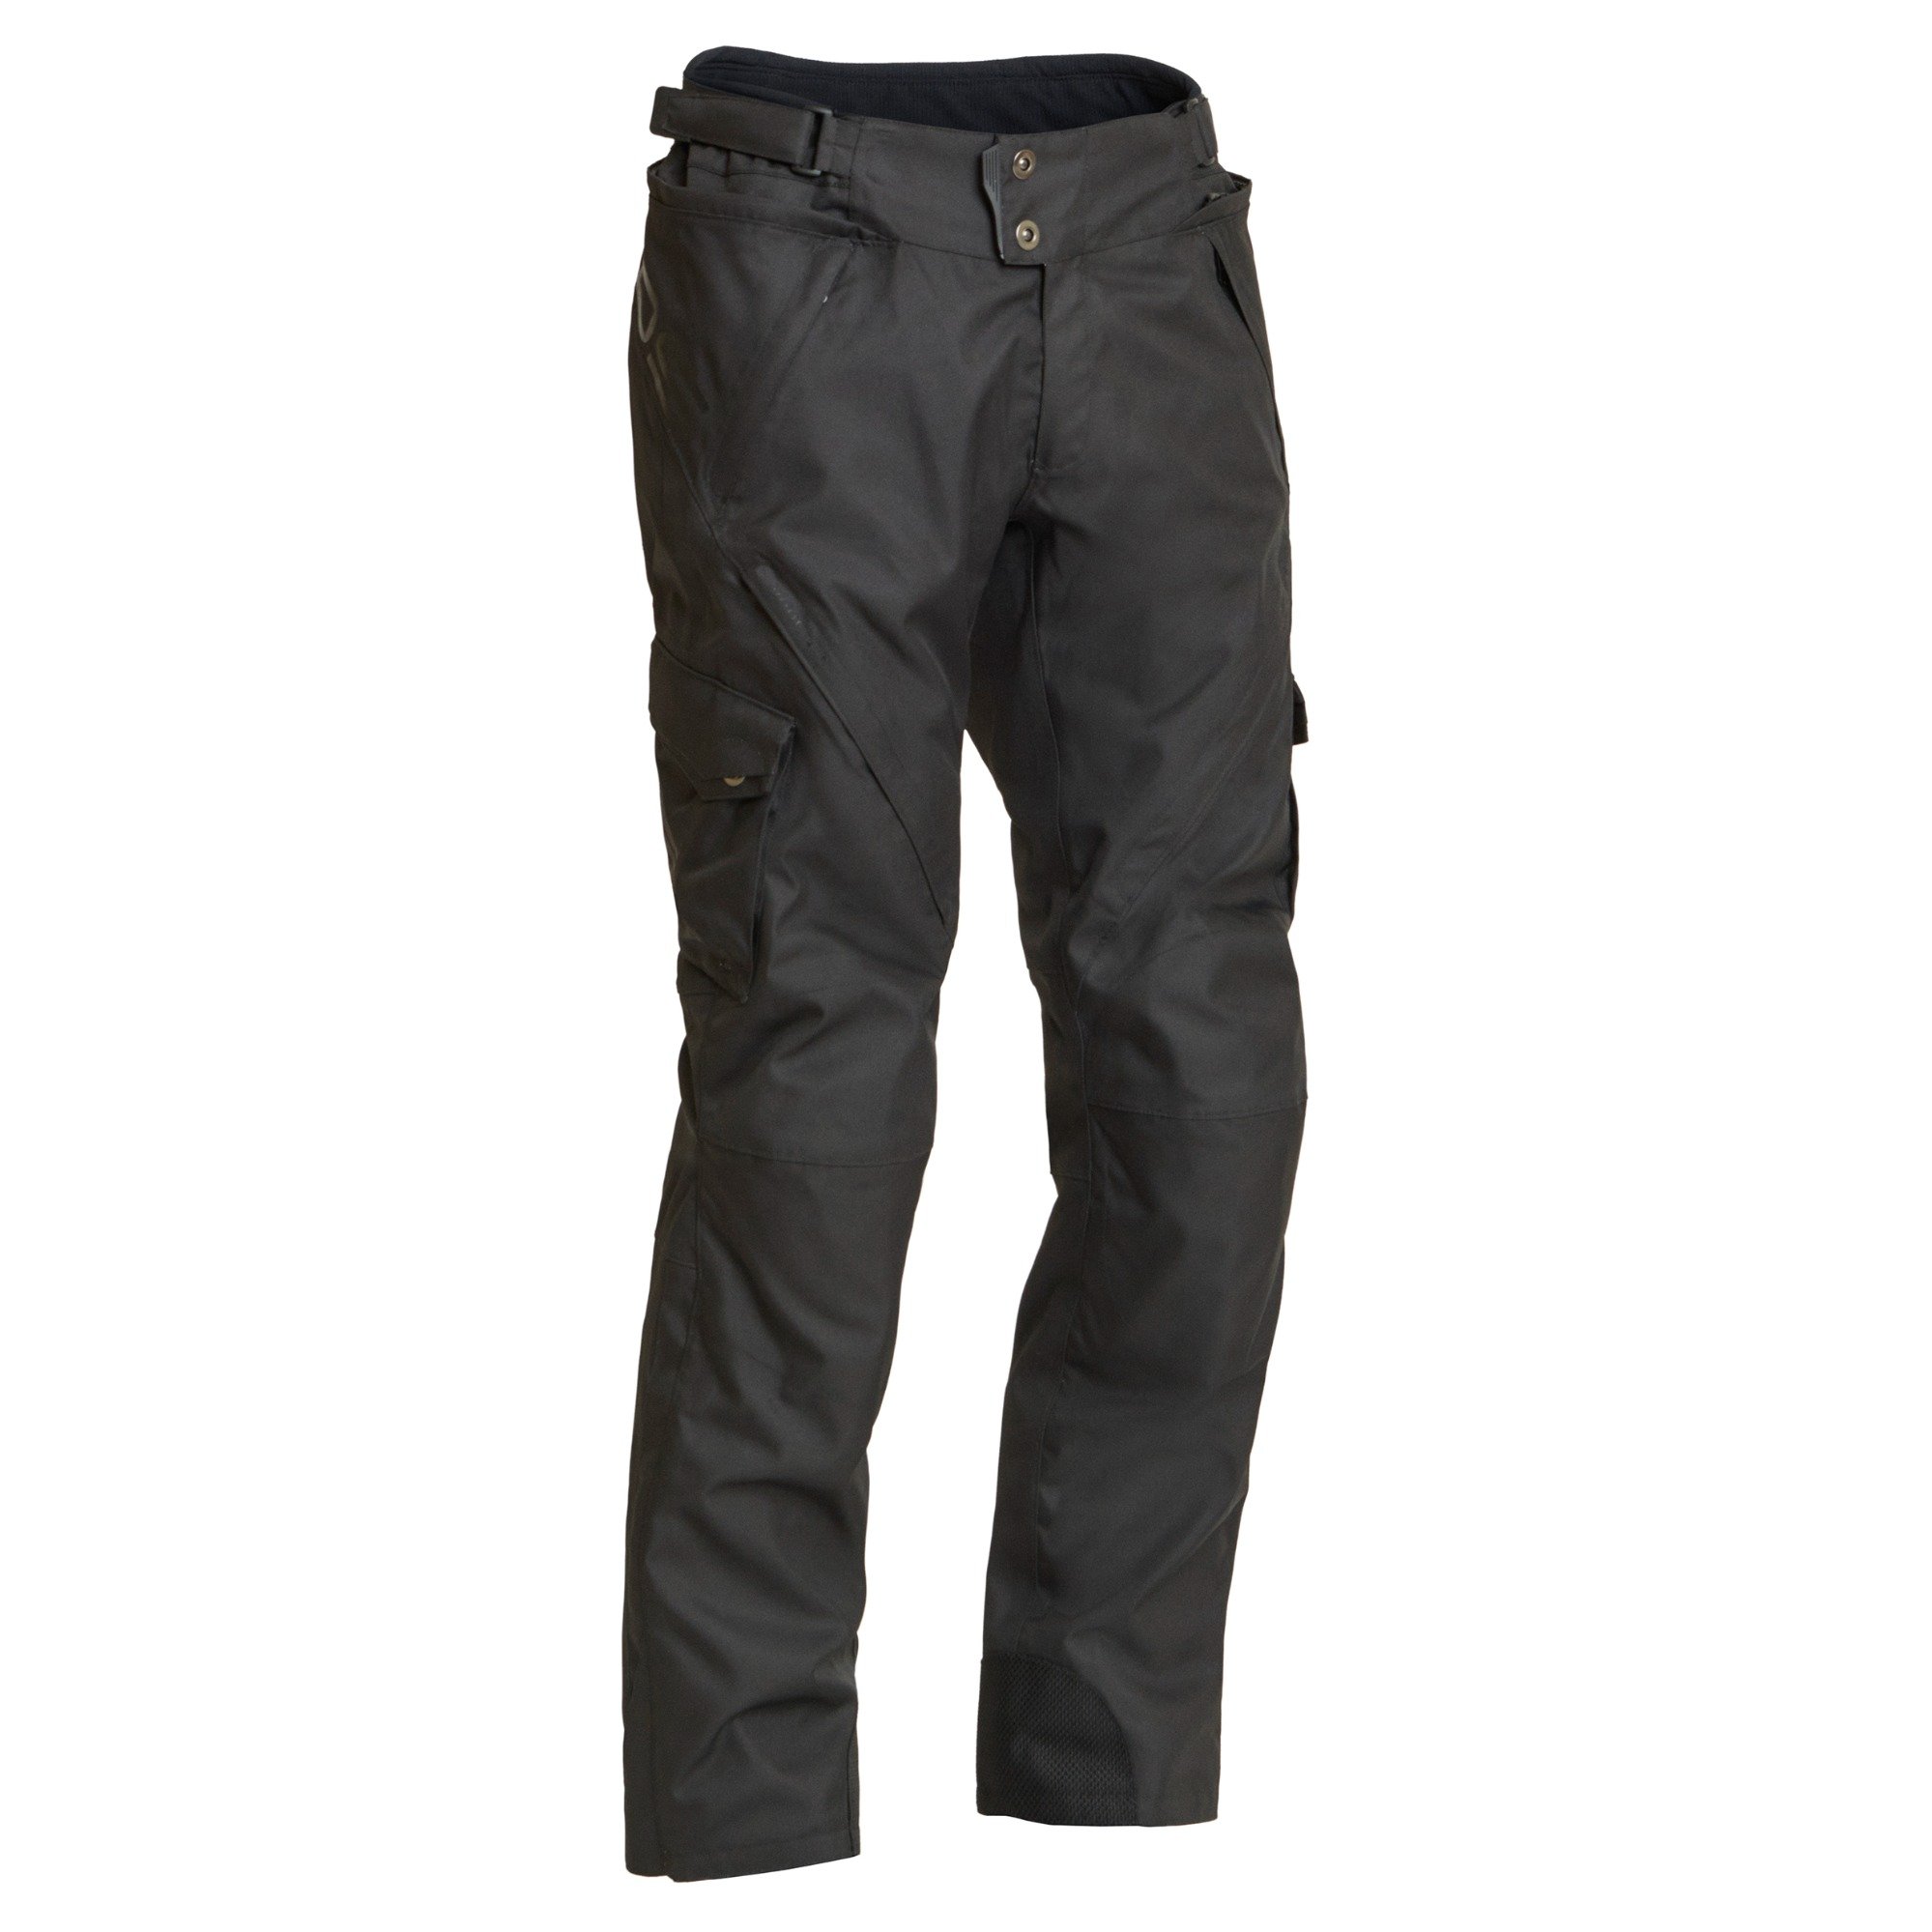 Image of Lindstrands Berga Black Textile Pants Size 62 ID 6438235188233